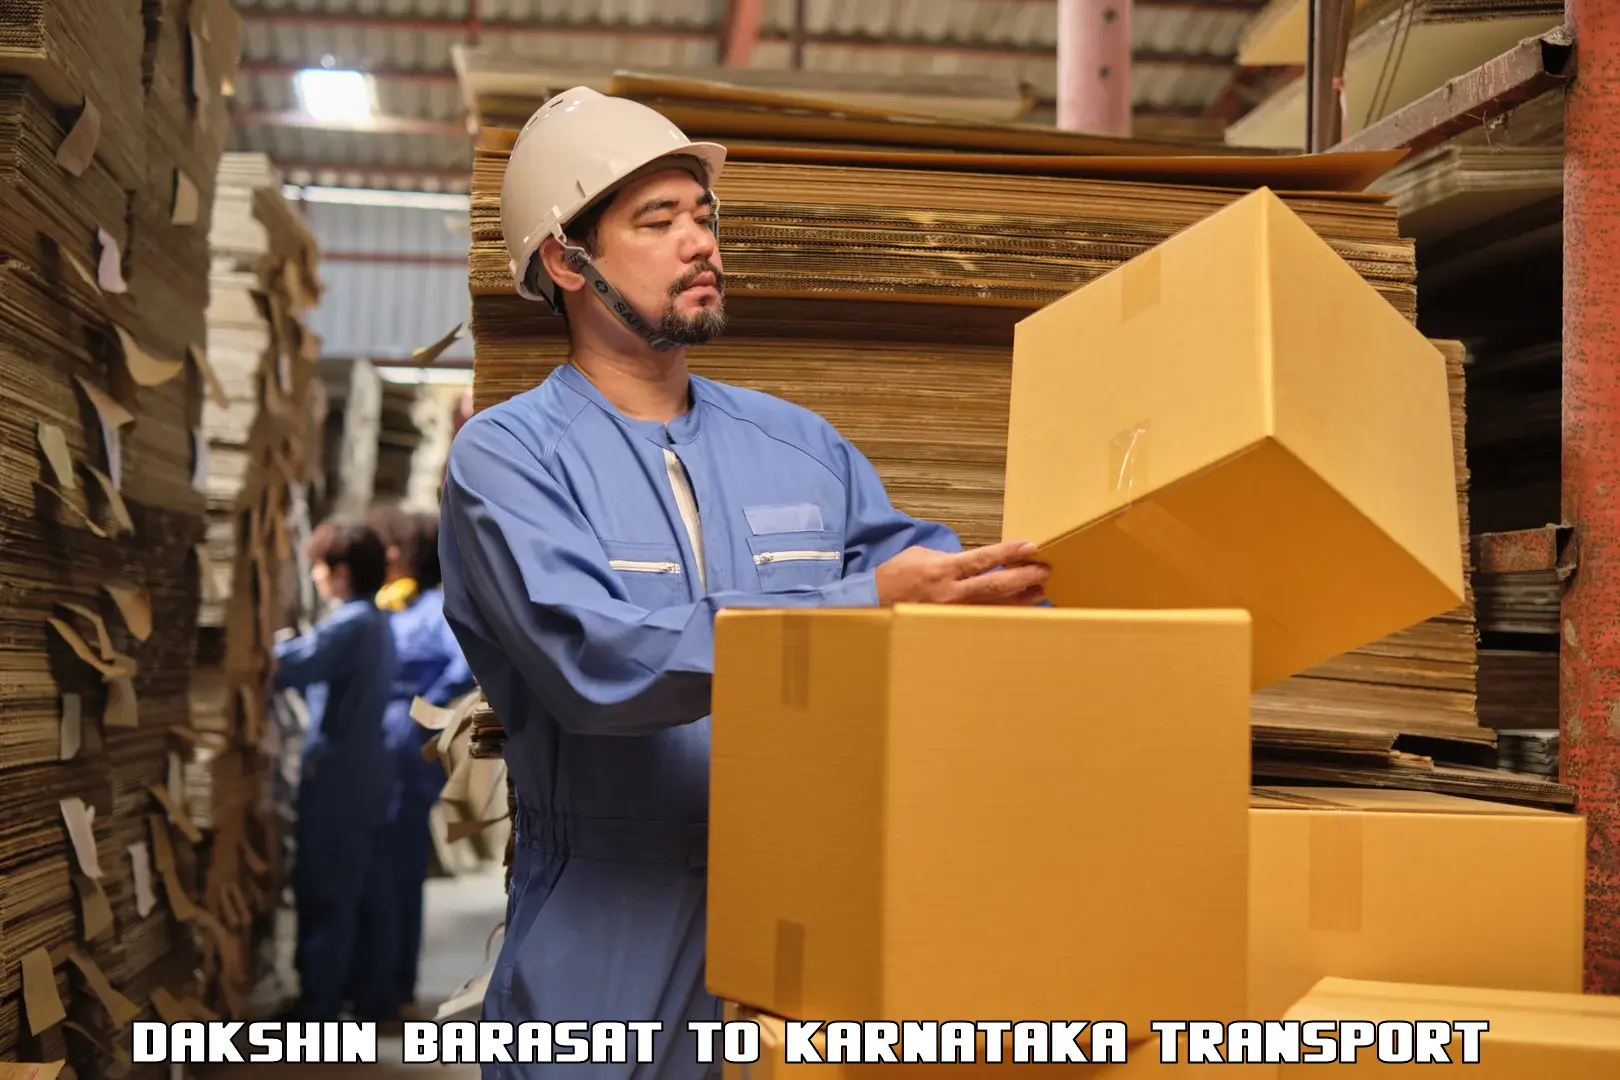 Part load transport service in India Dakshin Barasat to Ankola